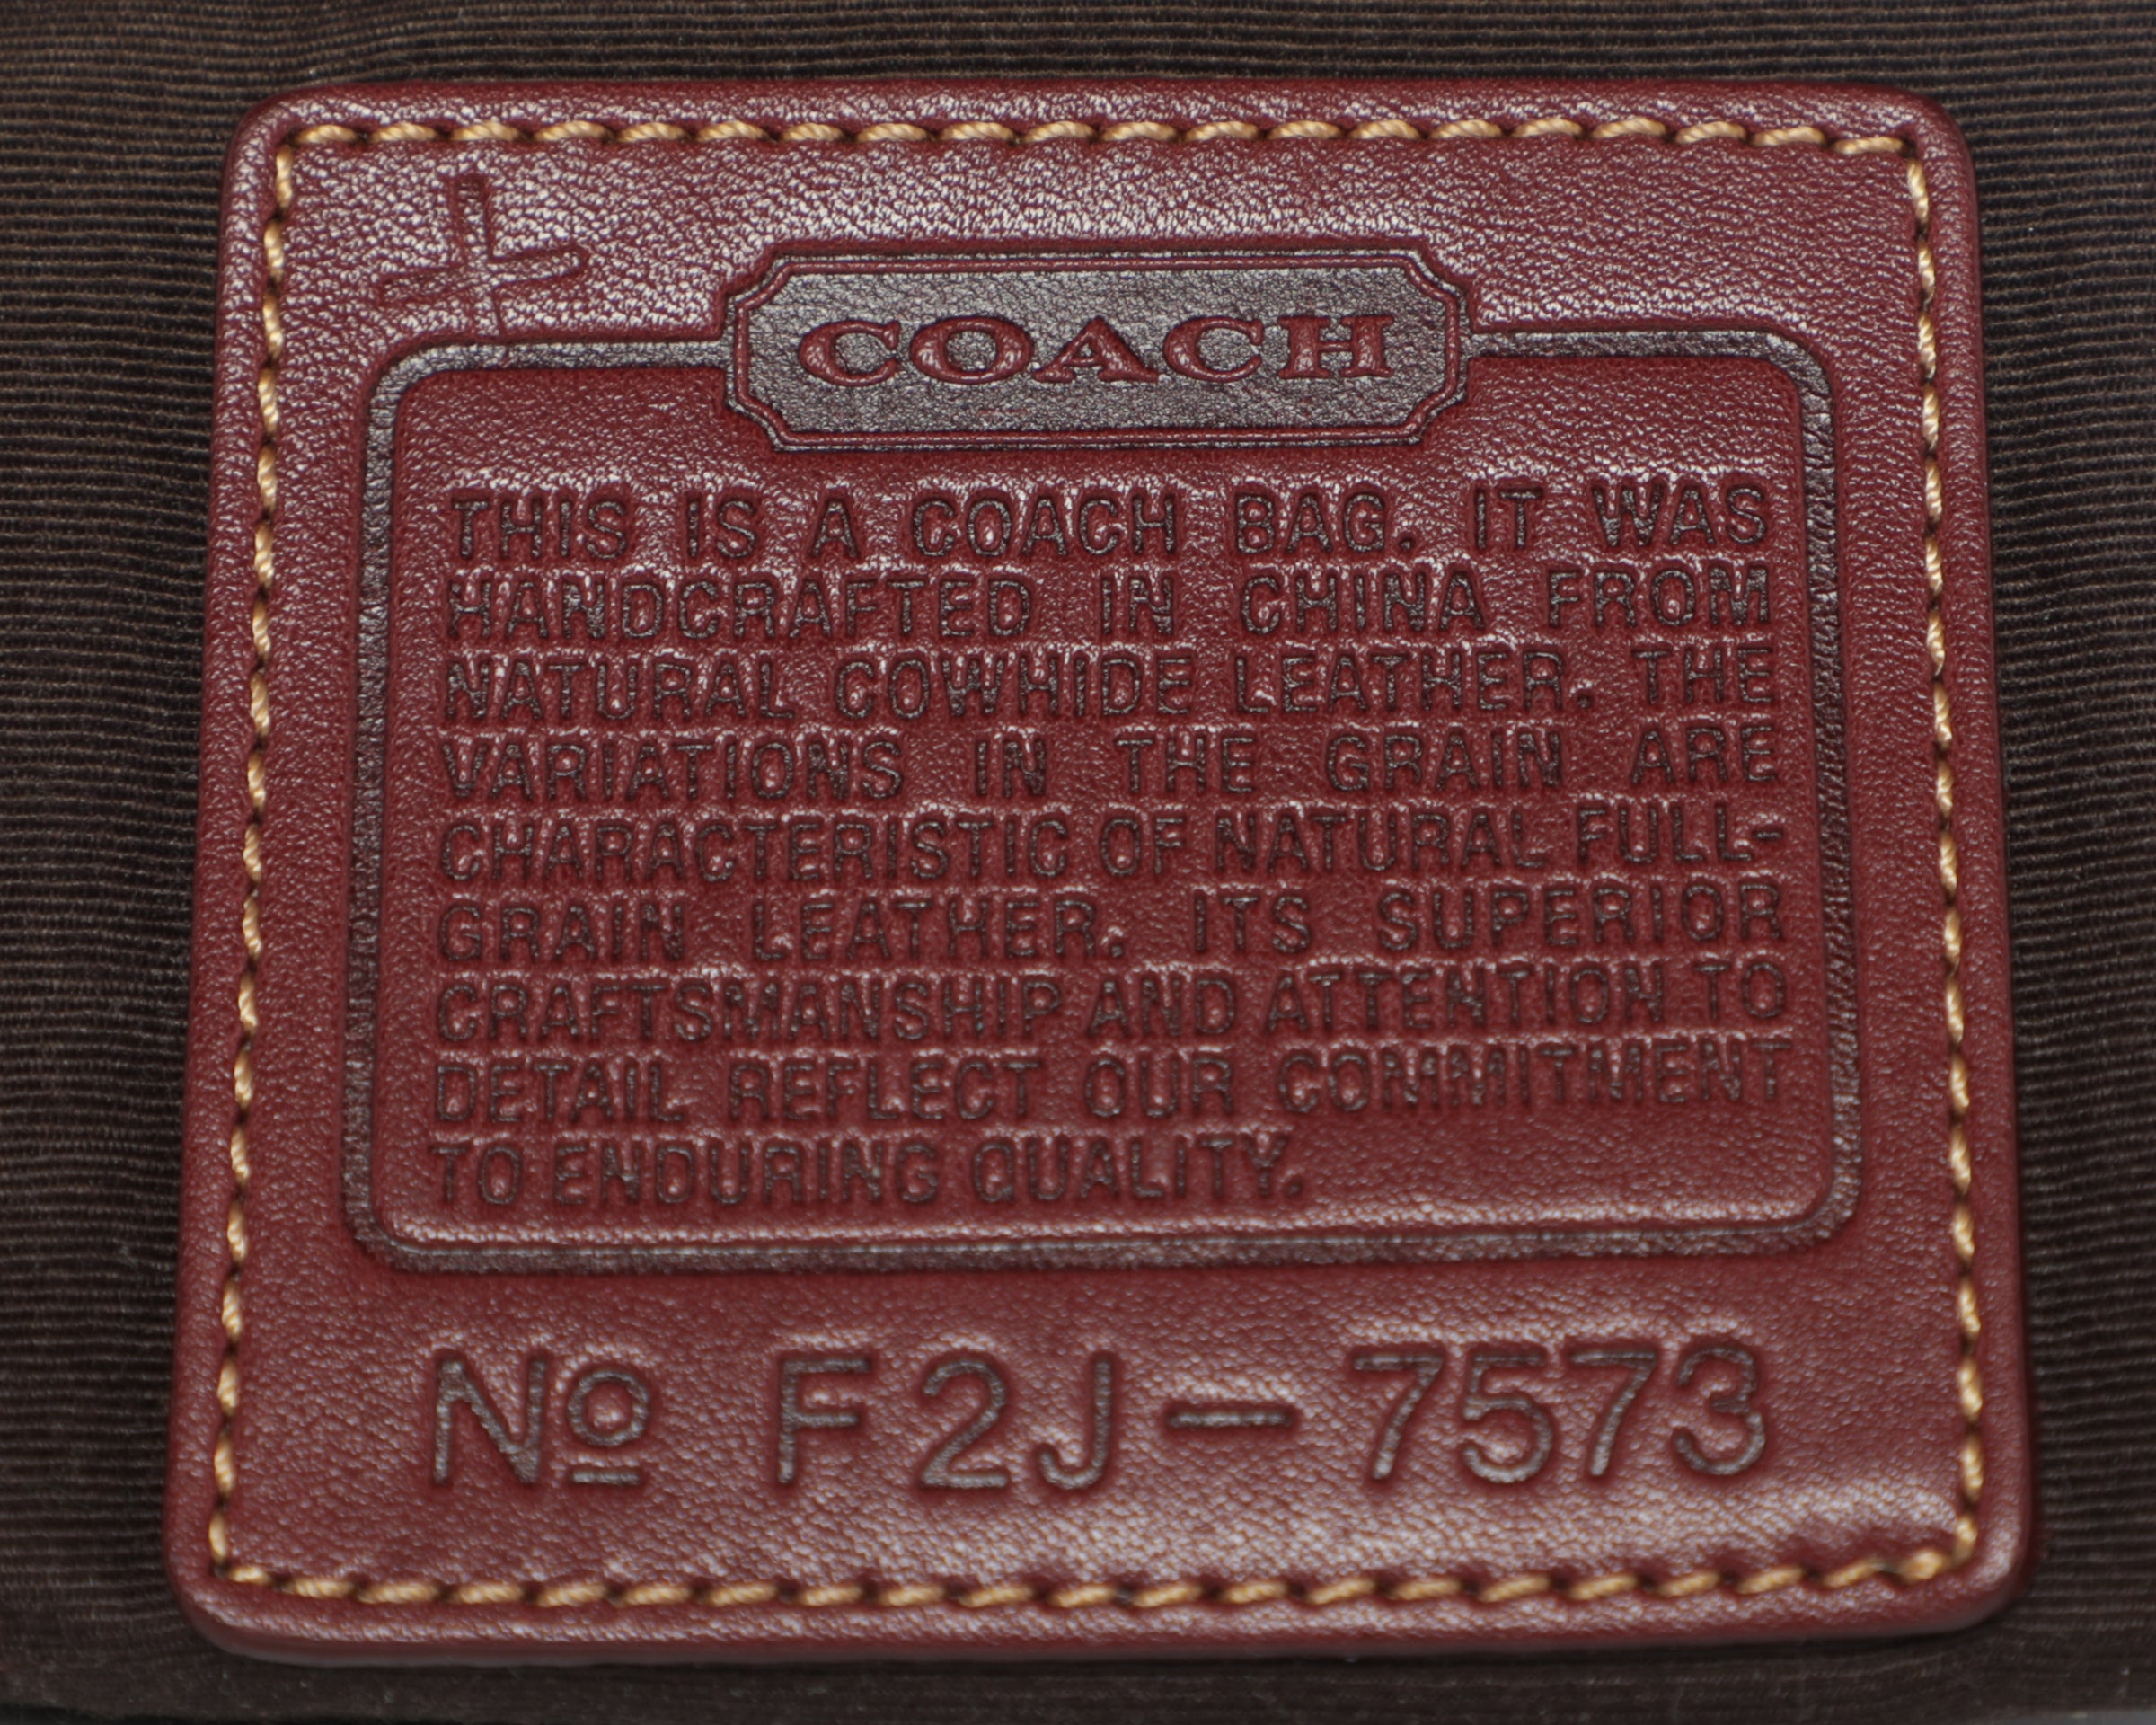 Vintage Coach Mini Black Logo Baguette Bag Y2K 2000s Bag Purse